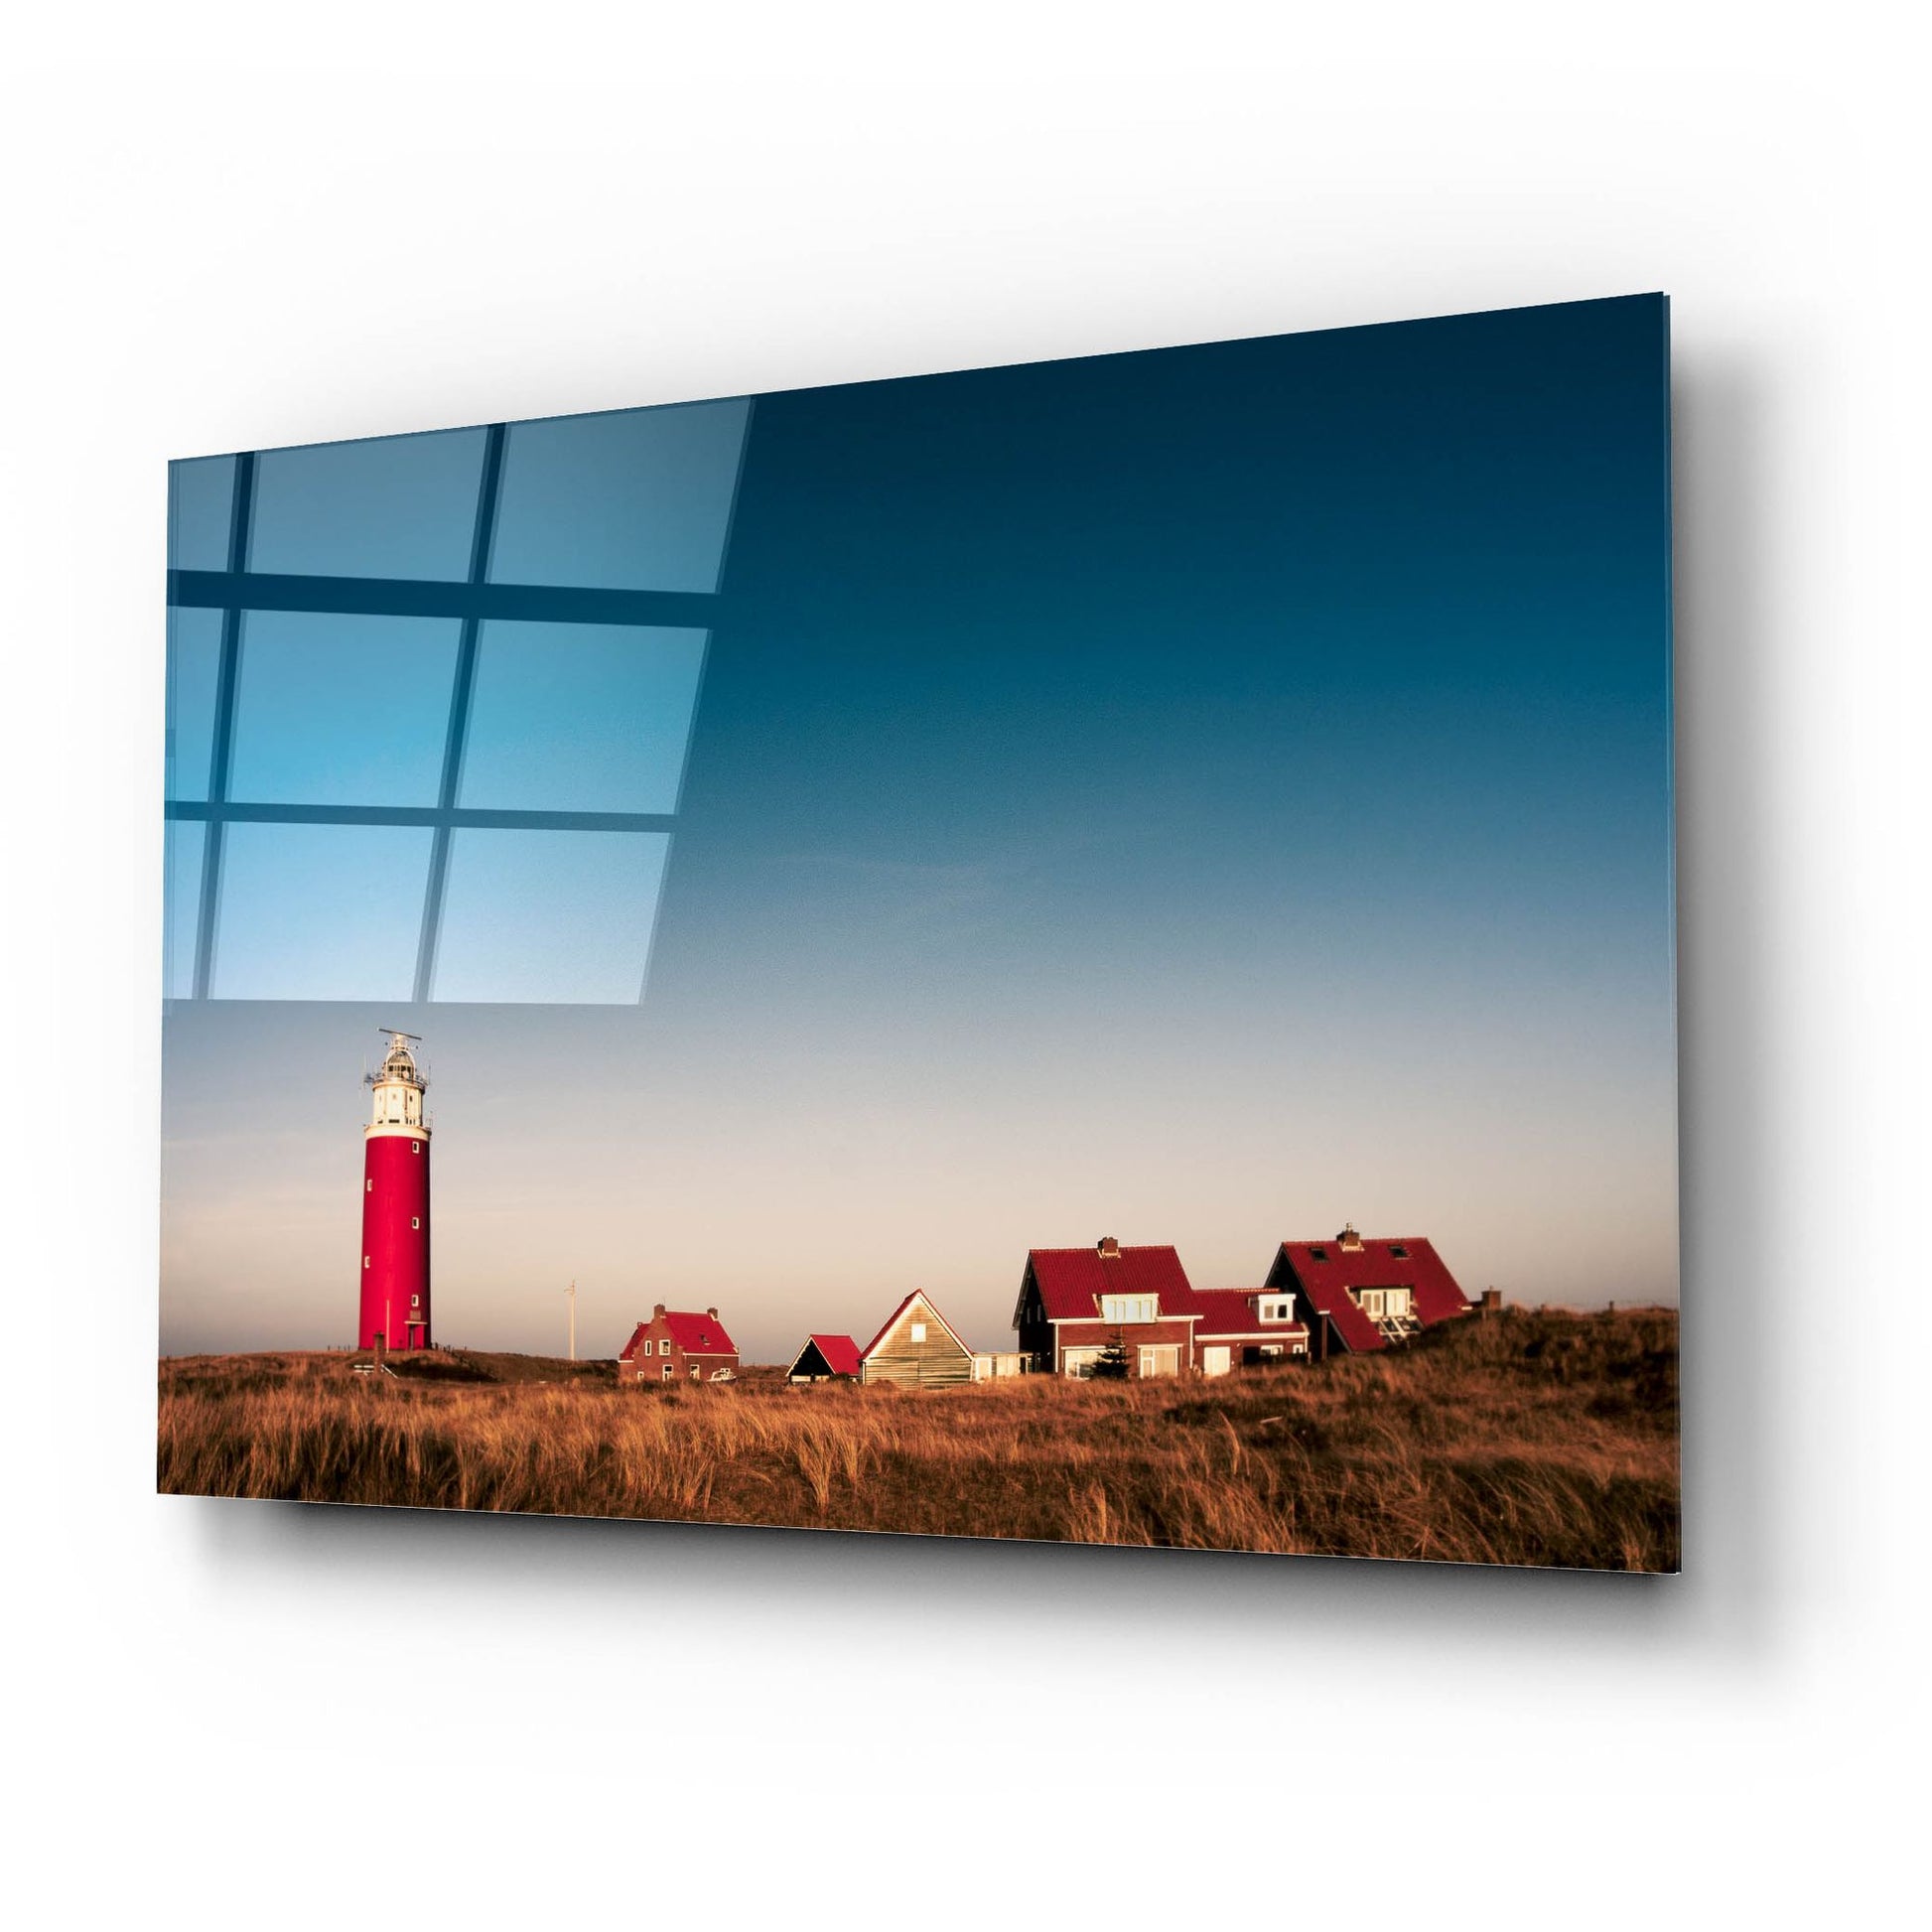 Epic Art 'Texel Lighthouse' by Istvan Nagy, Acrylic Glass Wall Art,24x16